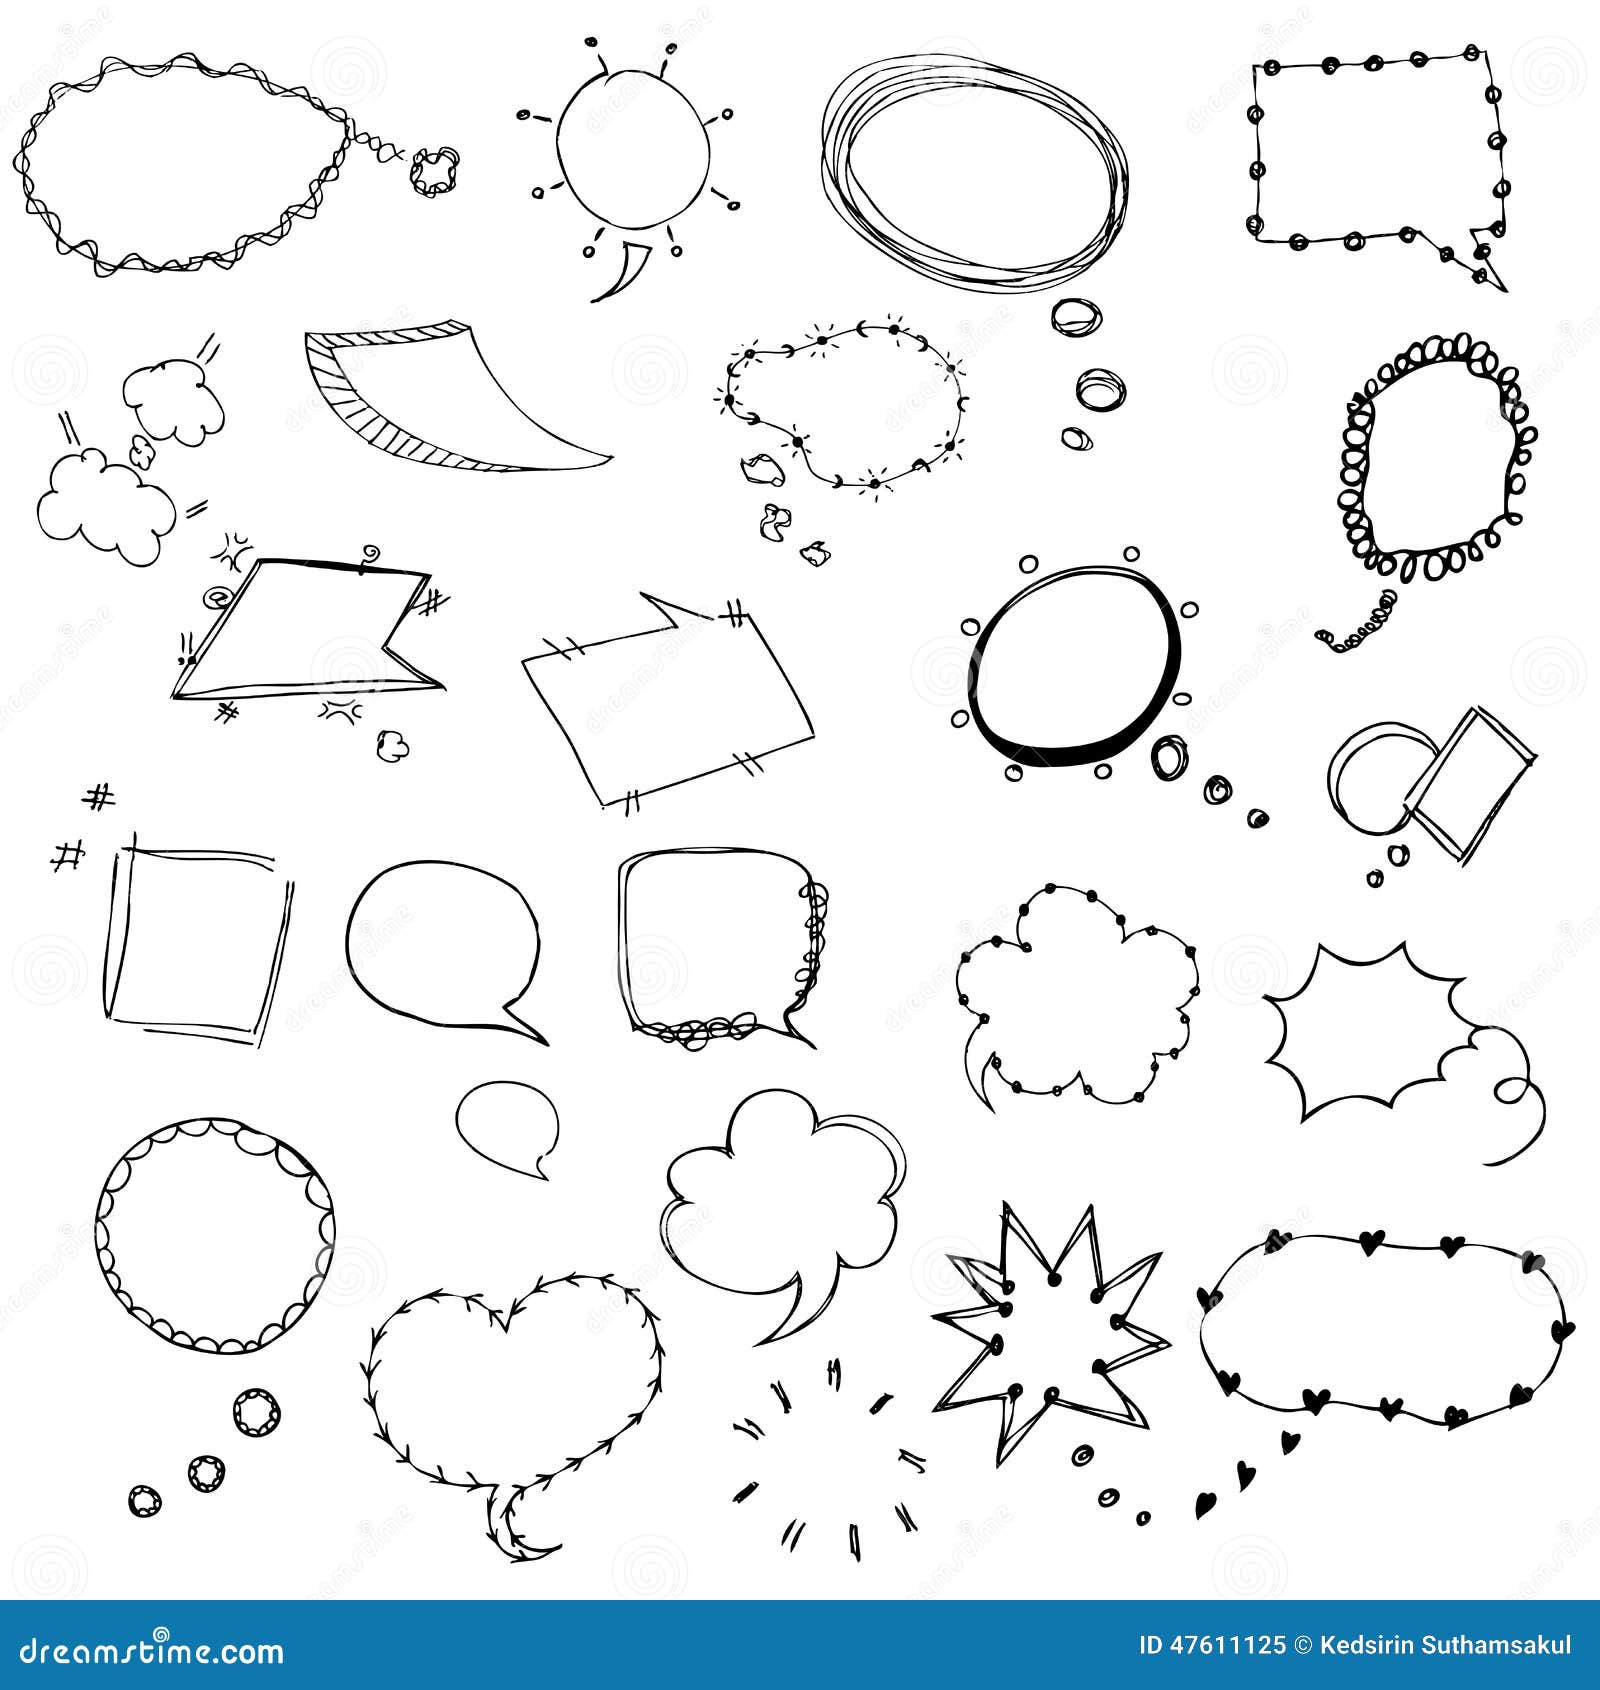 Premium Vector | Comic speech bubble doodle set cloud shape hand drawn  sketch style speech bubble chat message